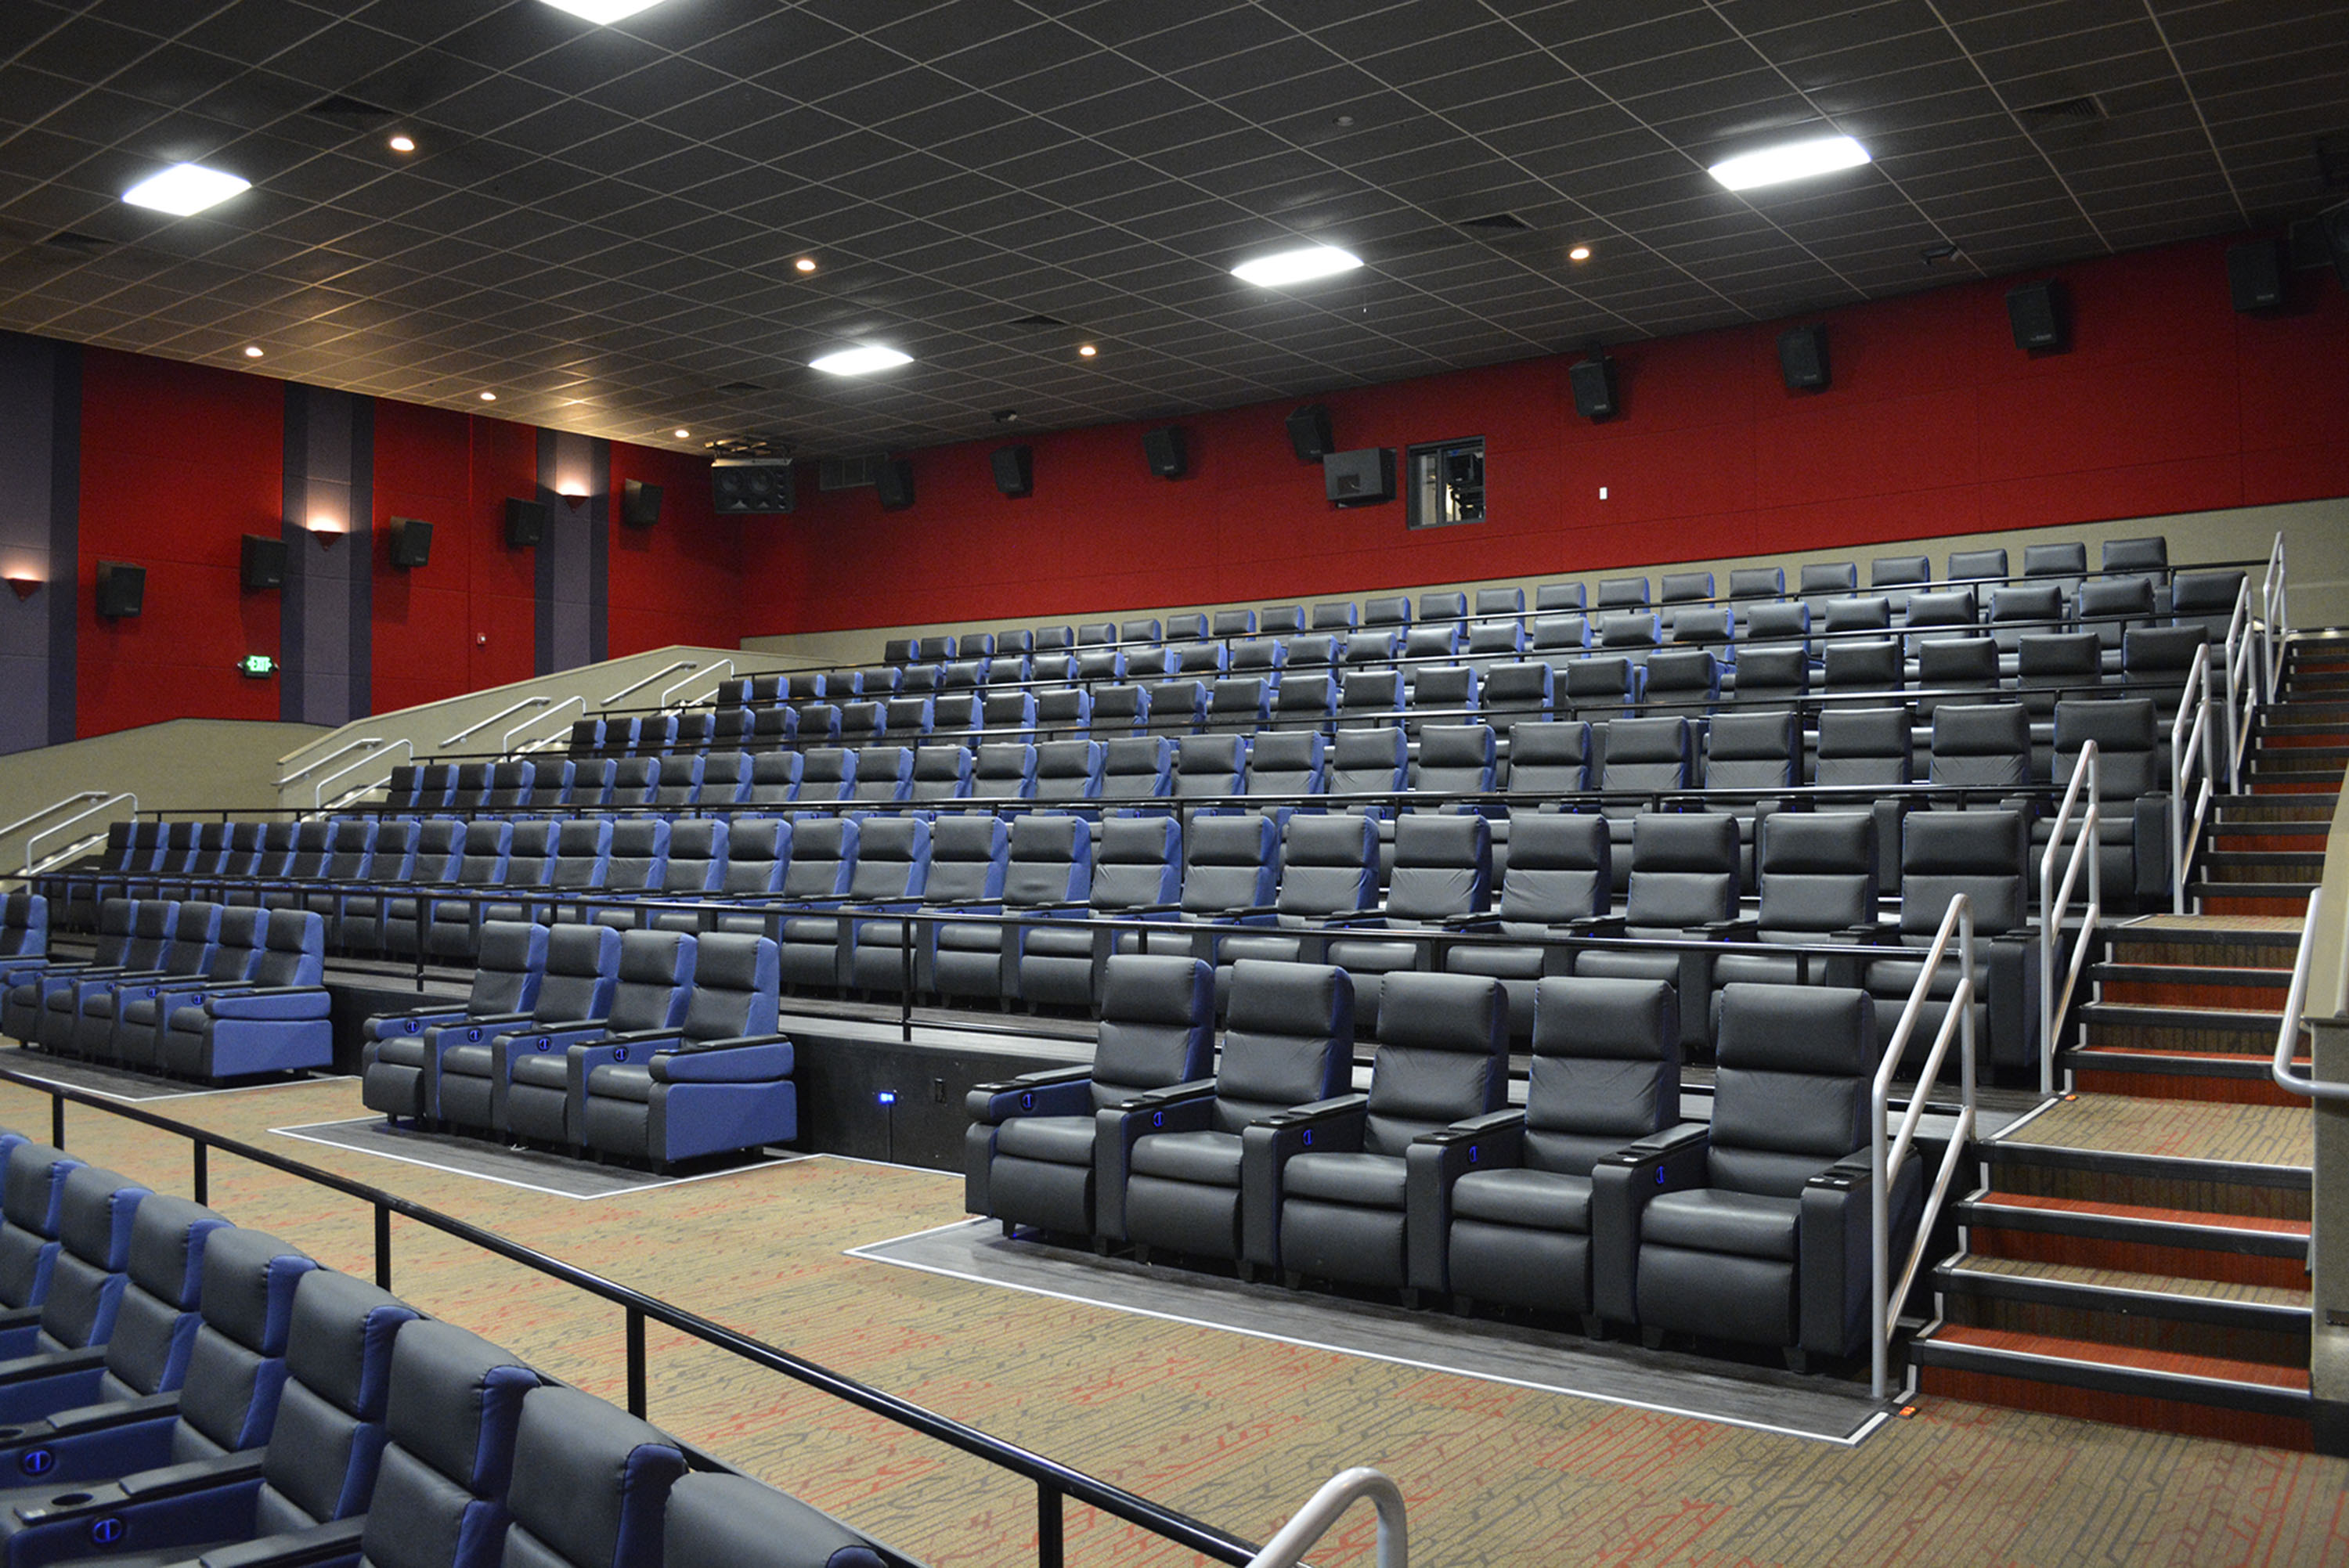 Regal Cinemas Movie Theater Seating